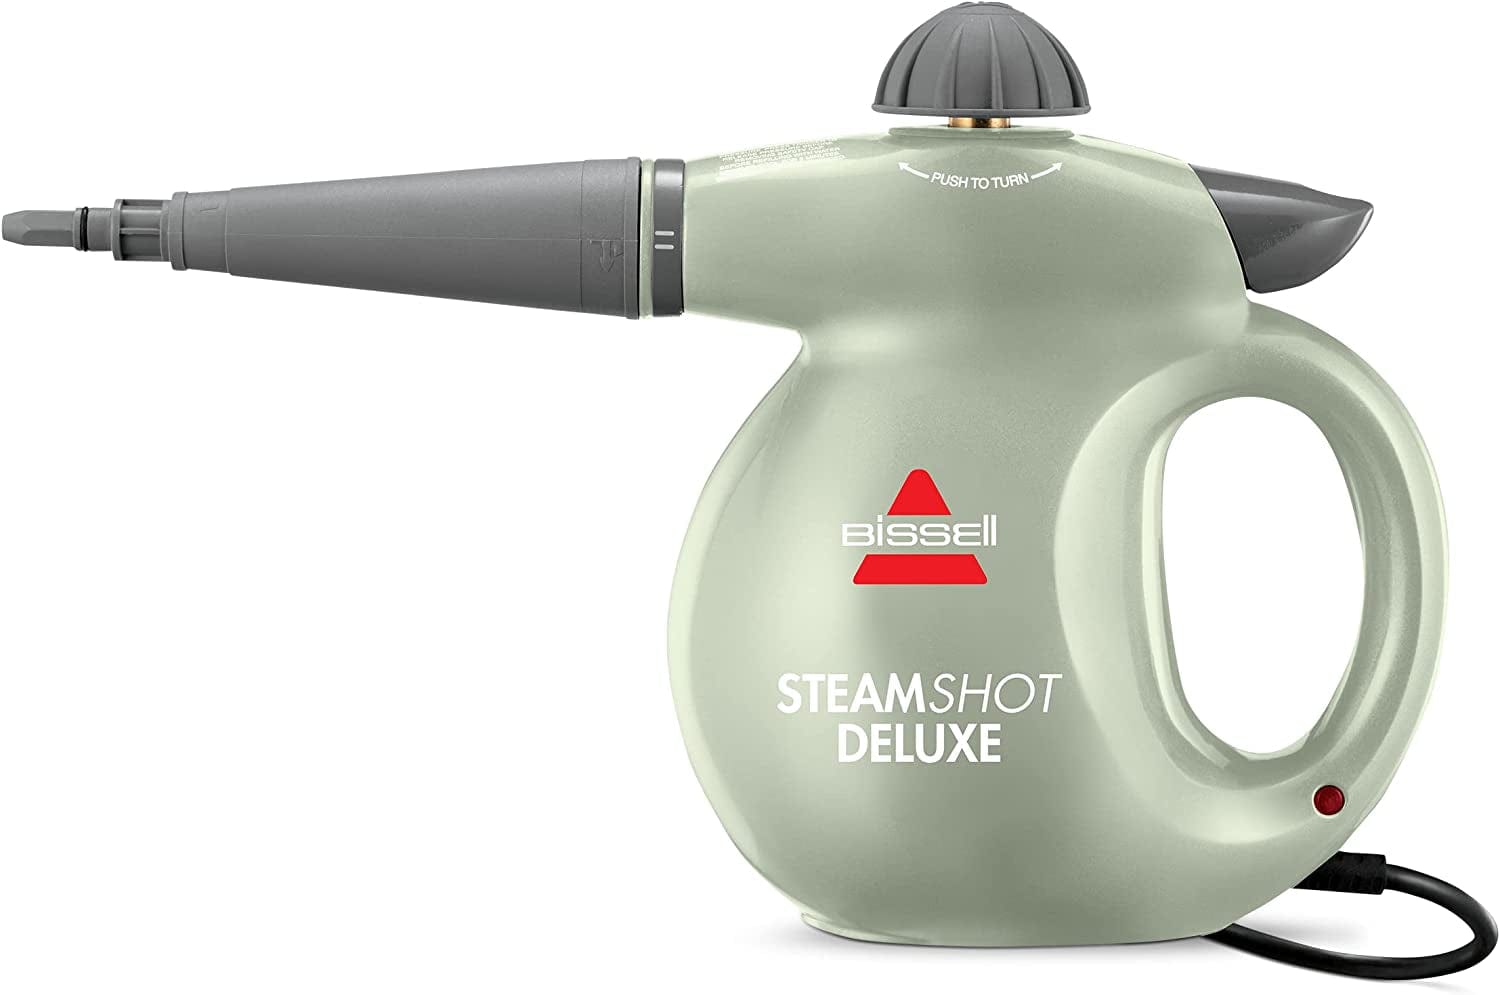 Bissell Steam Shot Deluxe Handheld Steam Cleaner